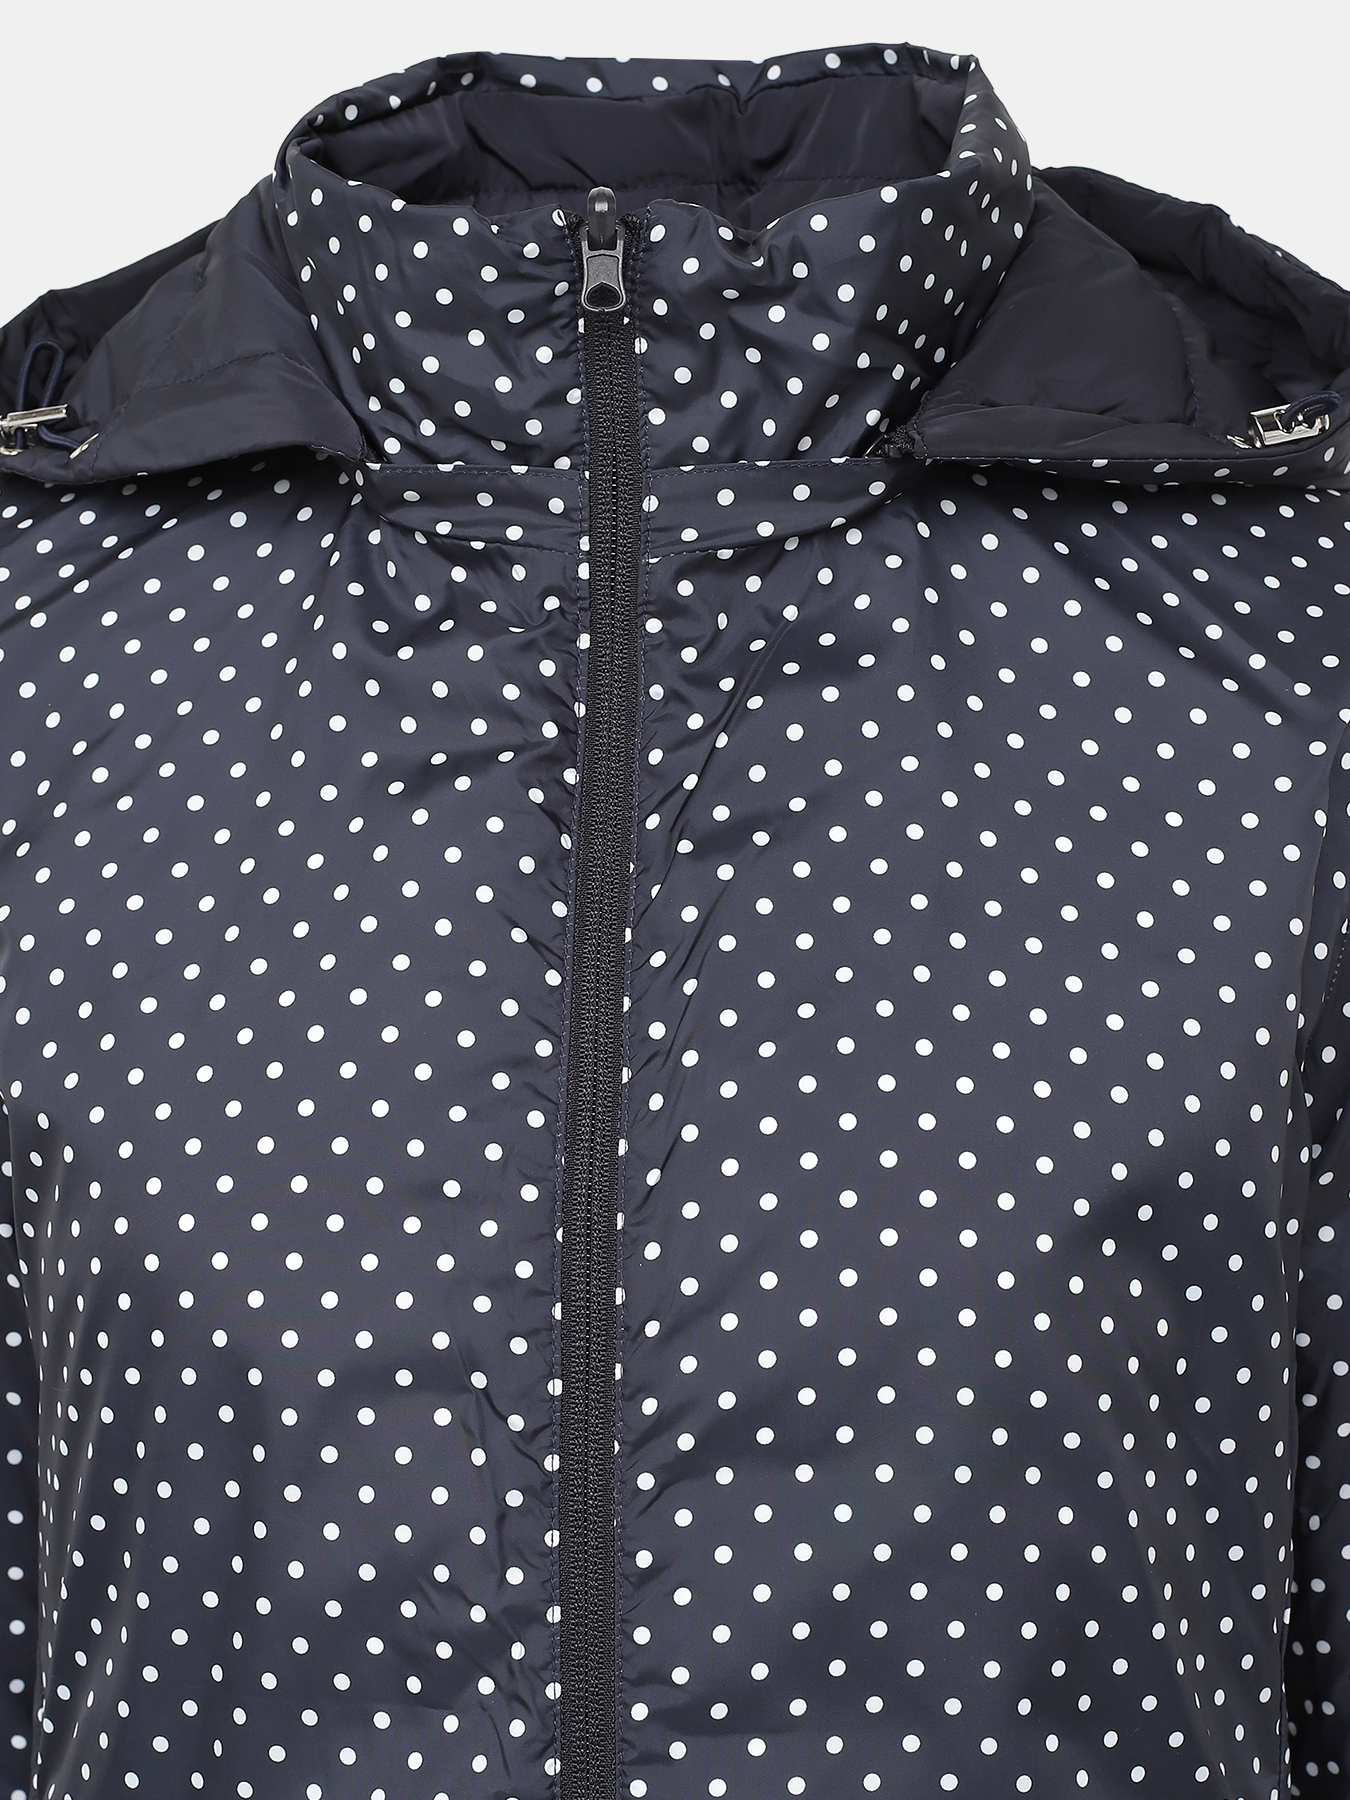 Двусторонняя куртка Alessandro Manzoni Purpur 405294-241, цвет темно-синий, размер 46-48 - фото 7